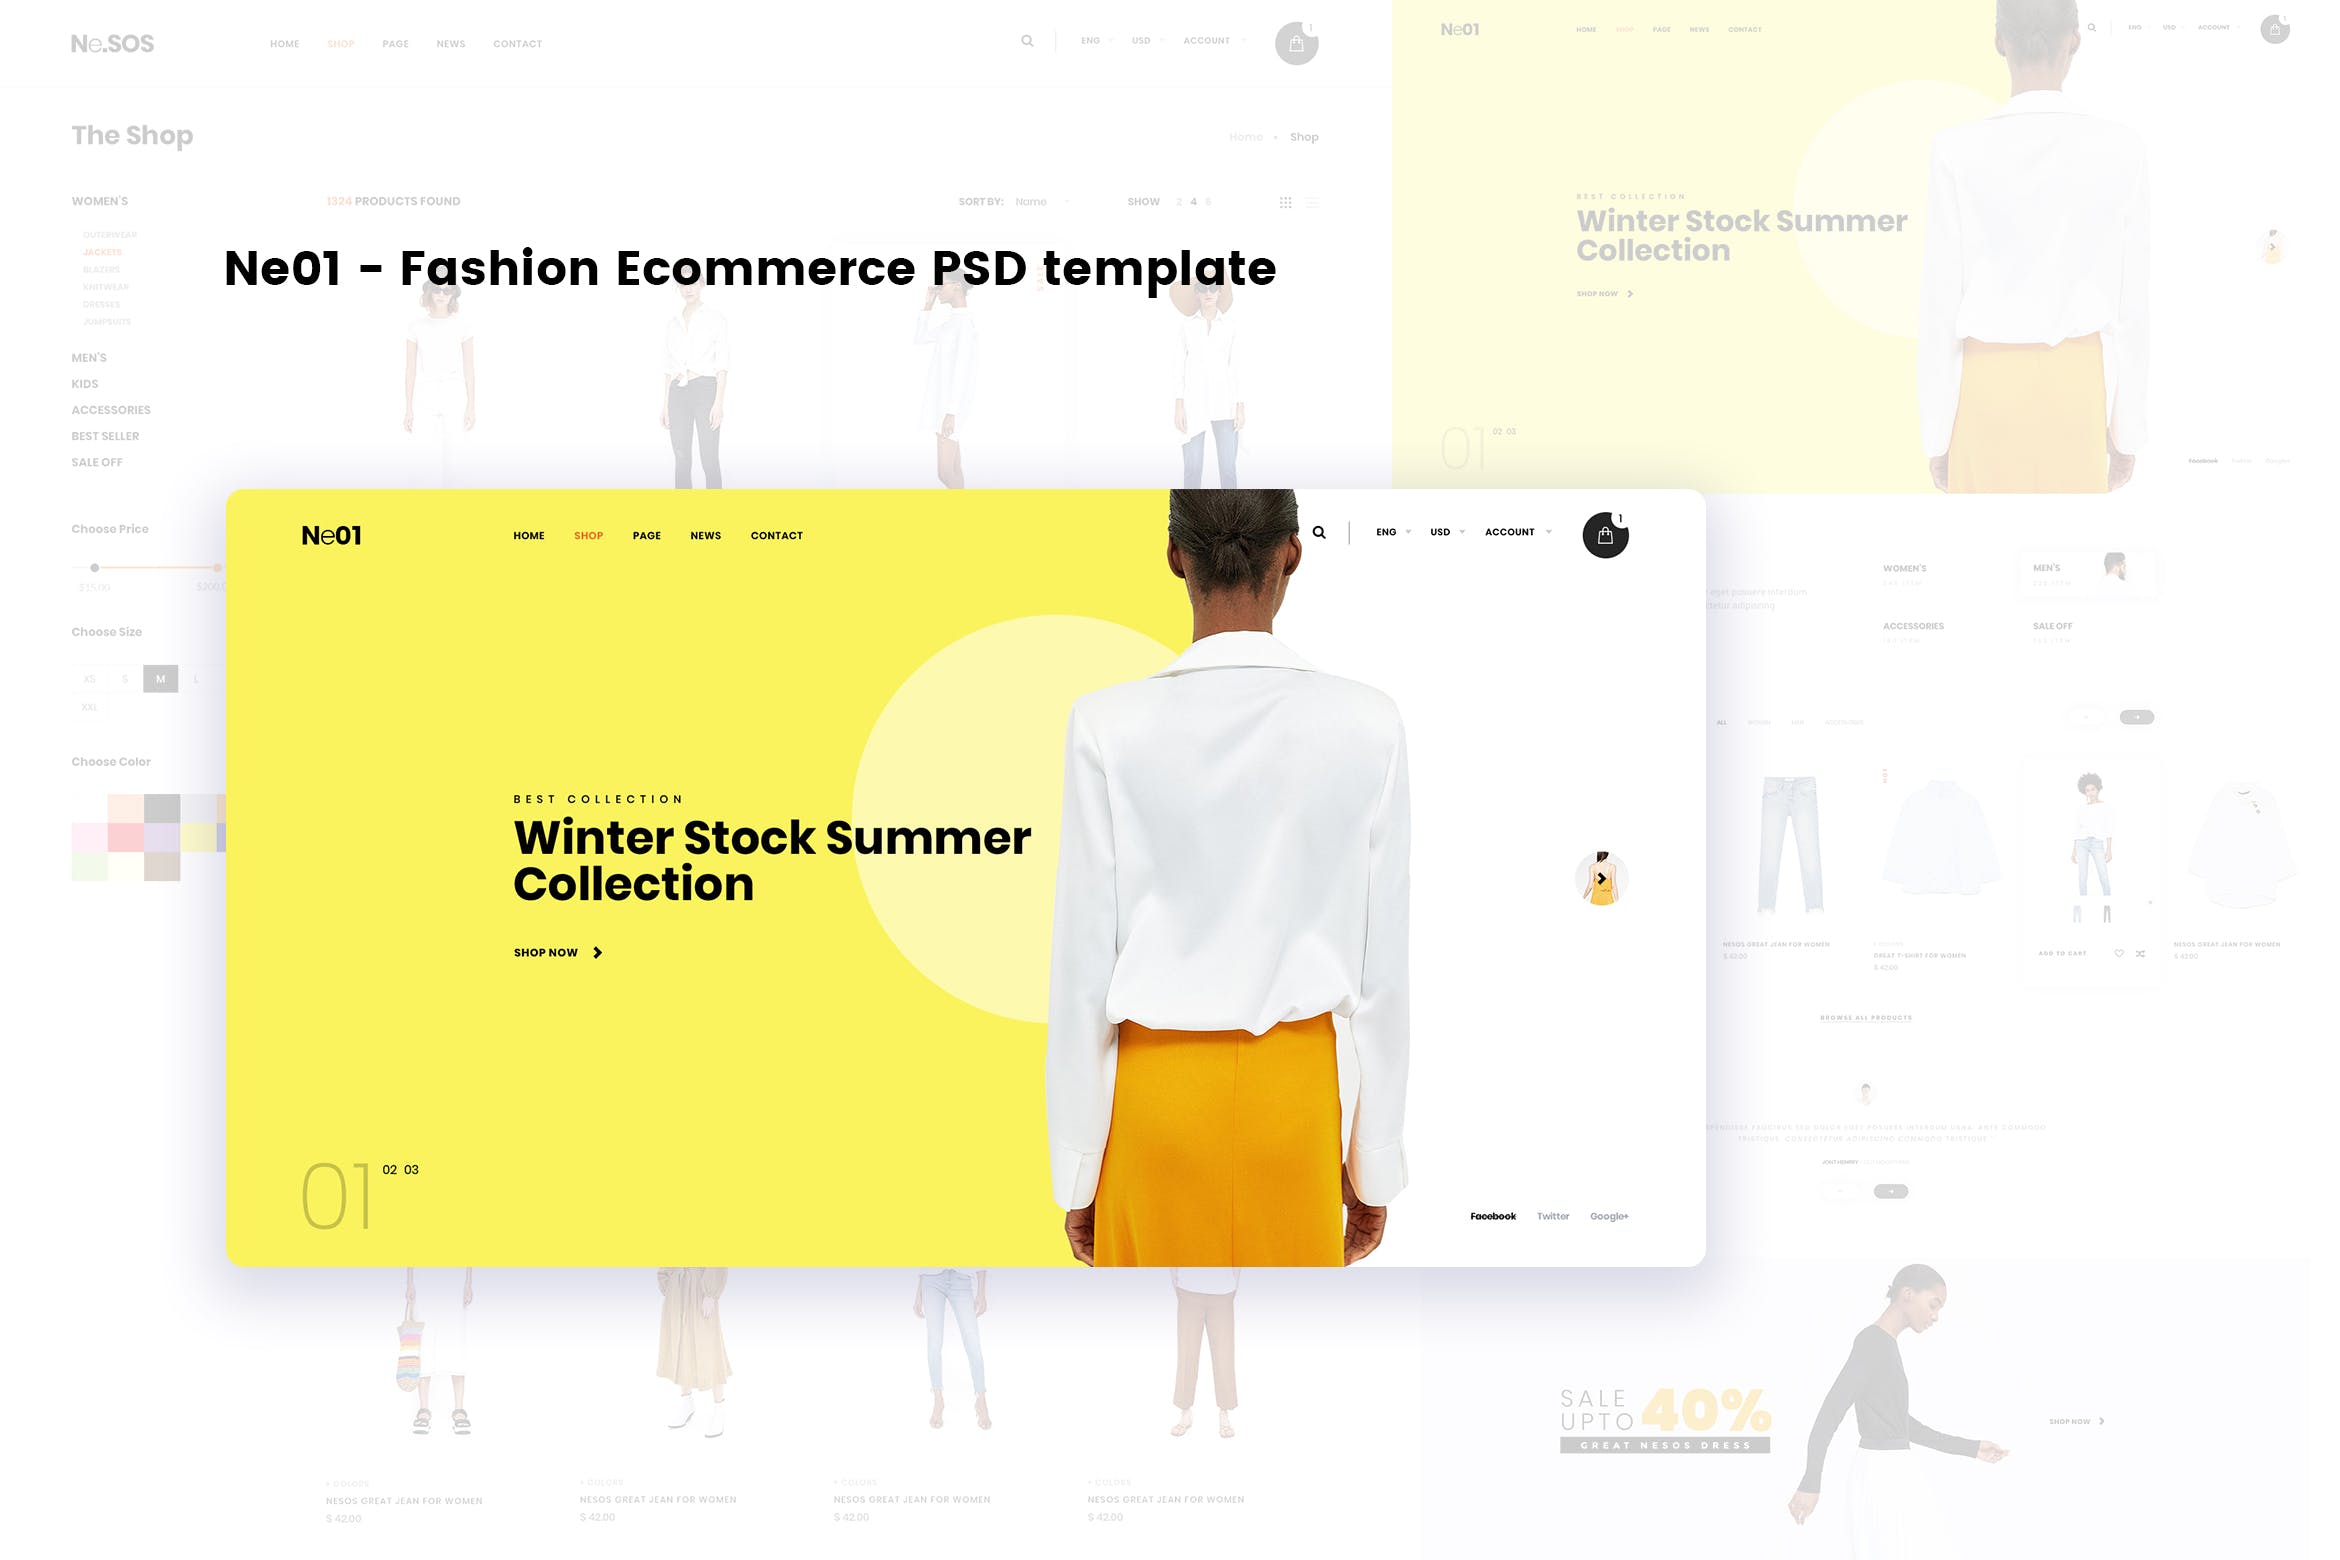 时尚电商平台网上商城设计PSD模板下载 Ne01 – Fashion Ecommerce PSD template插图